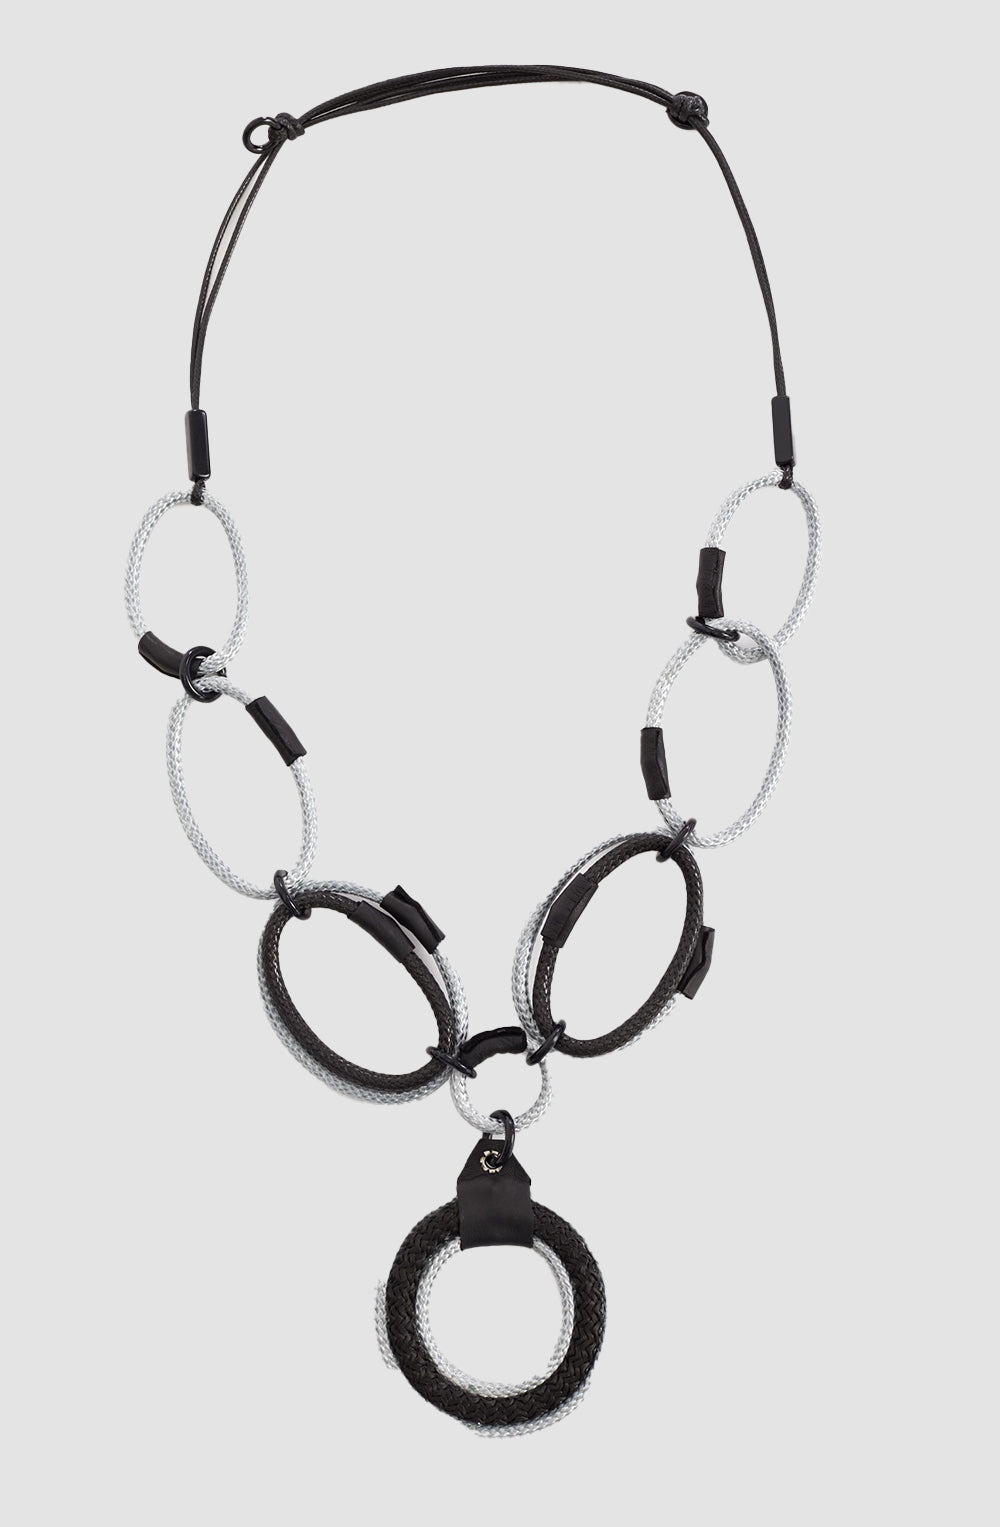 Braid Large Loop Necklace in Black Silver